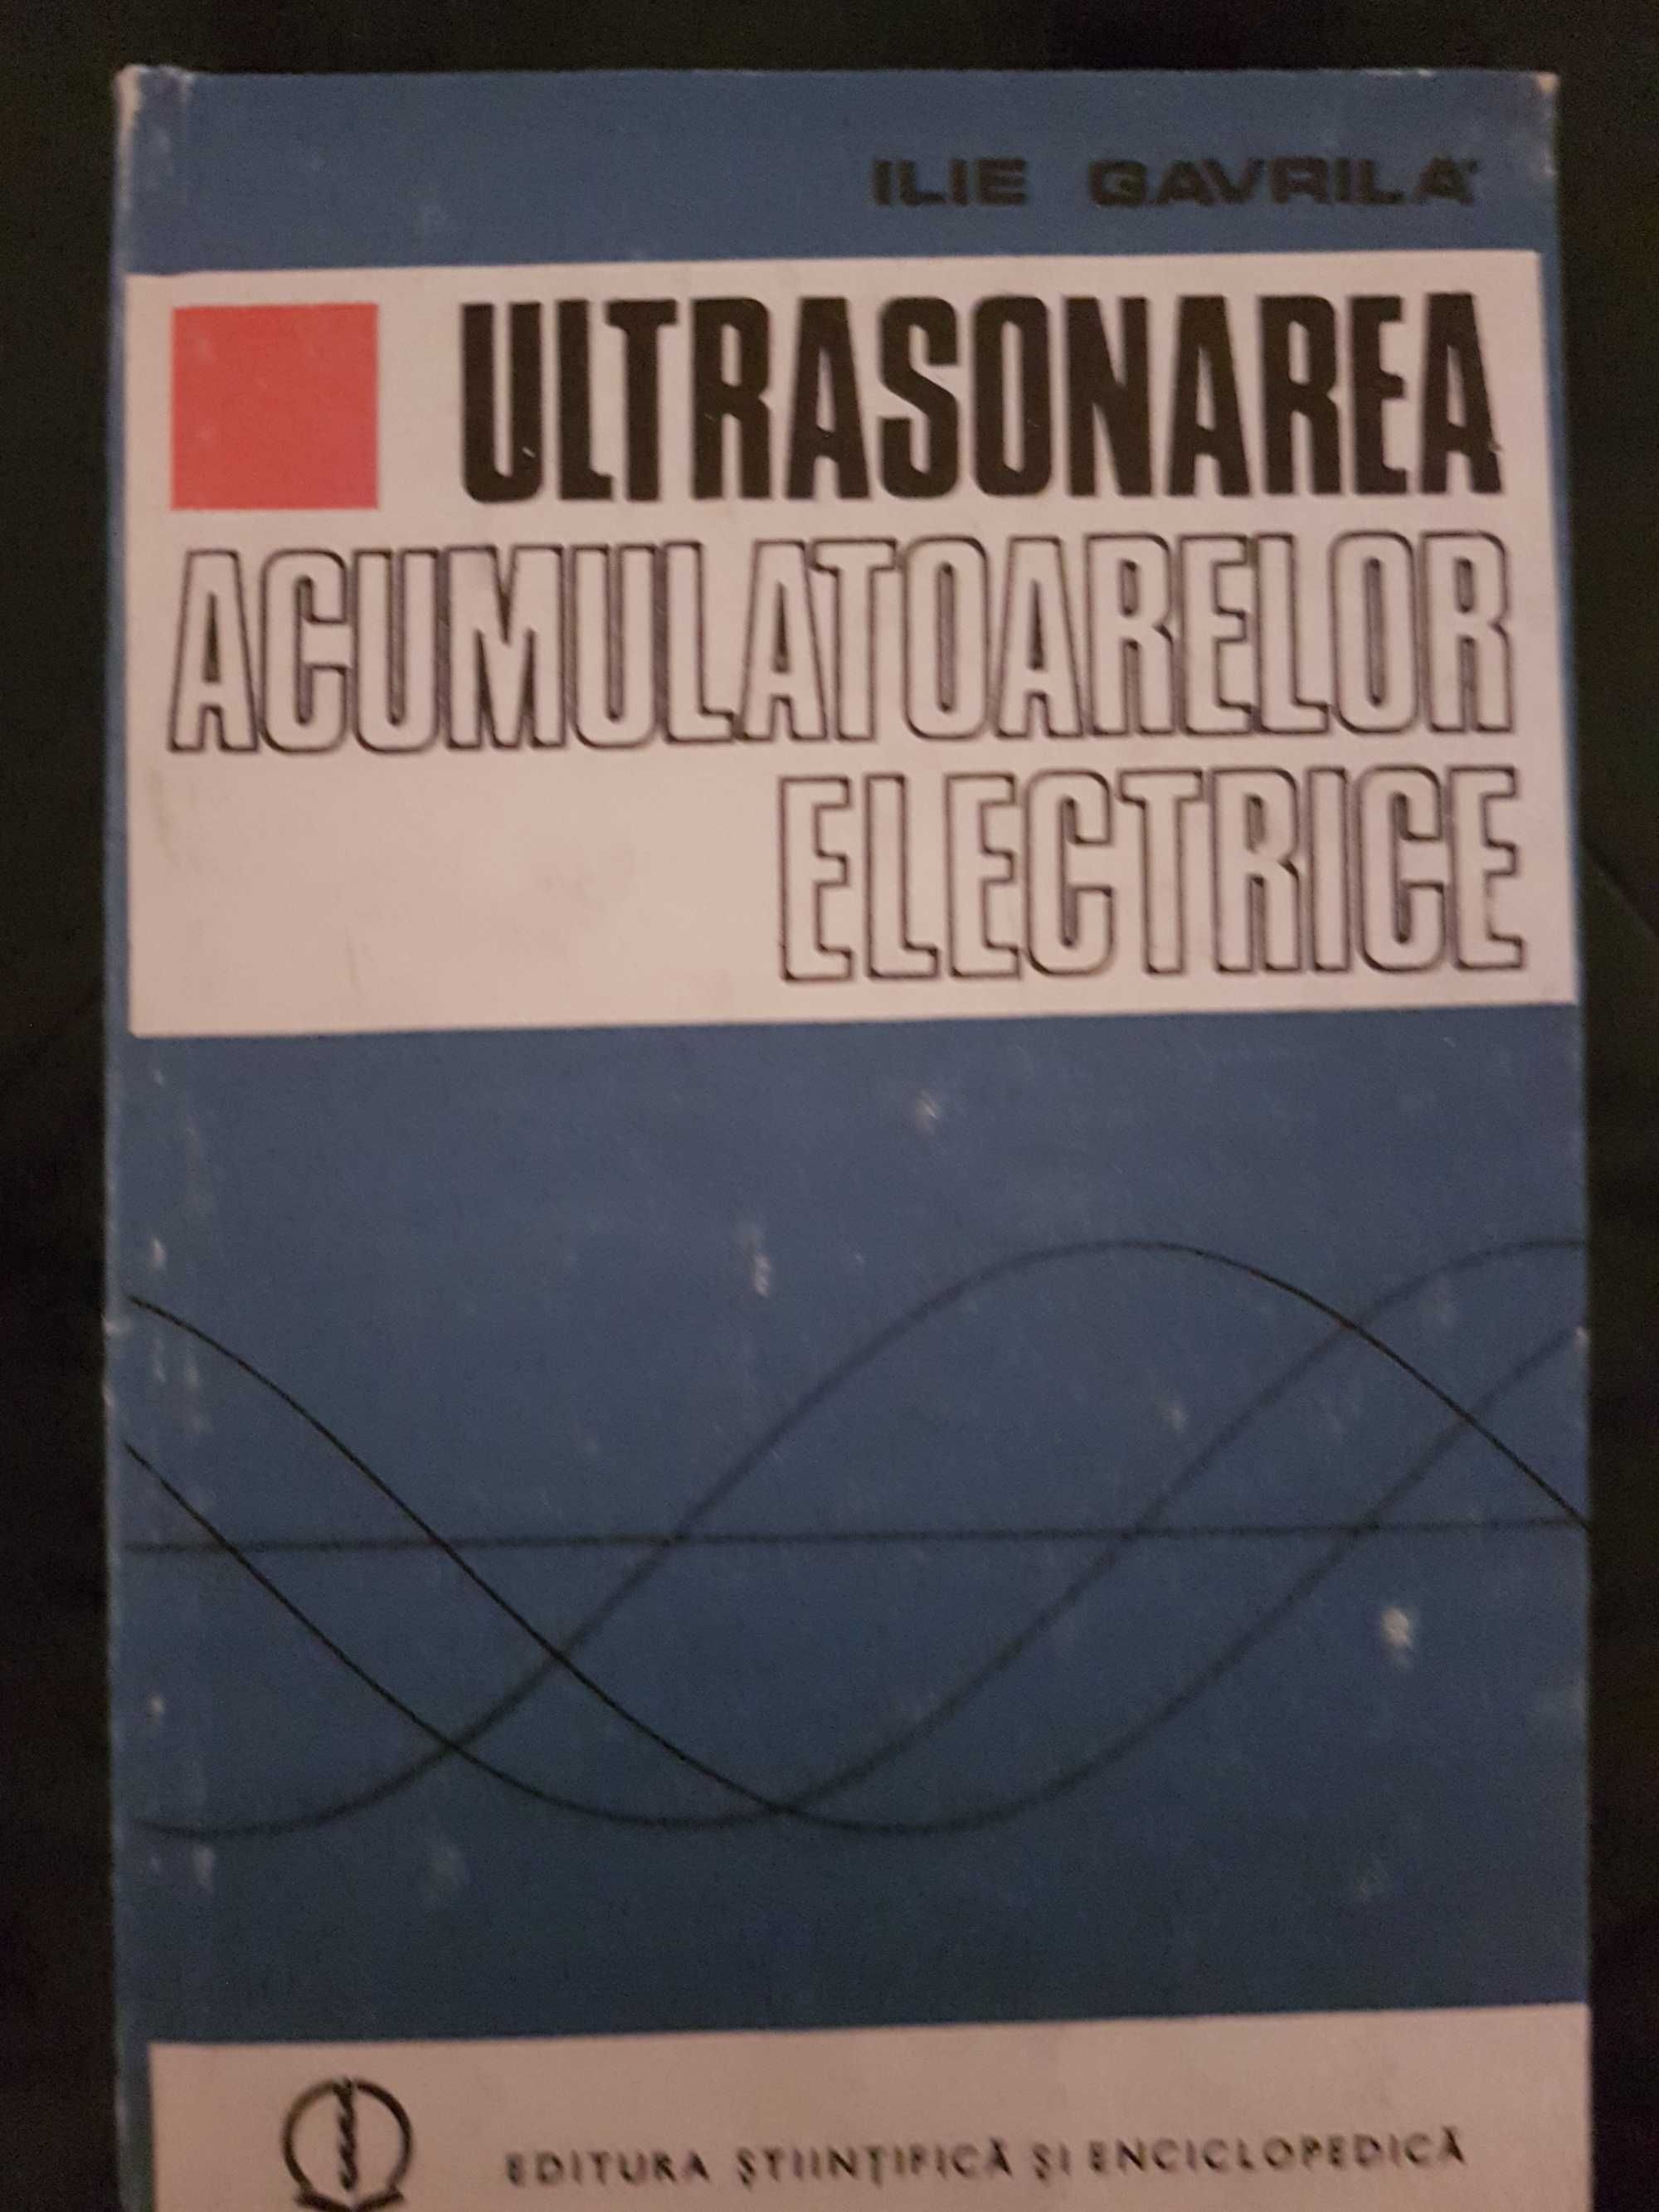 Ultrasonarea acumulatoarelor electrice